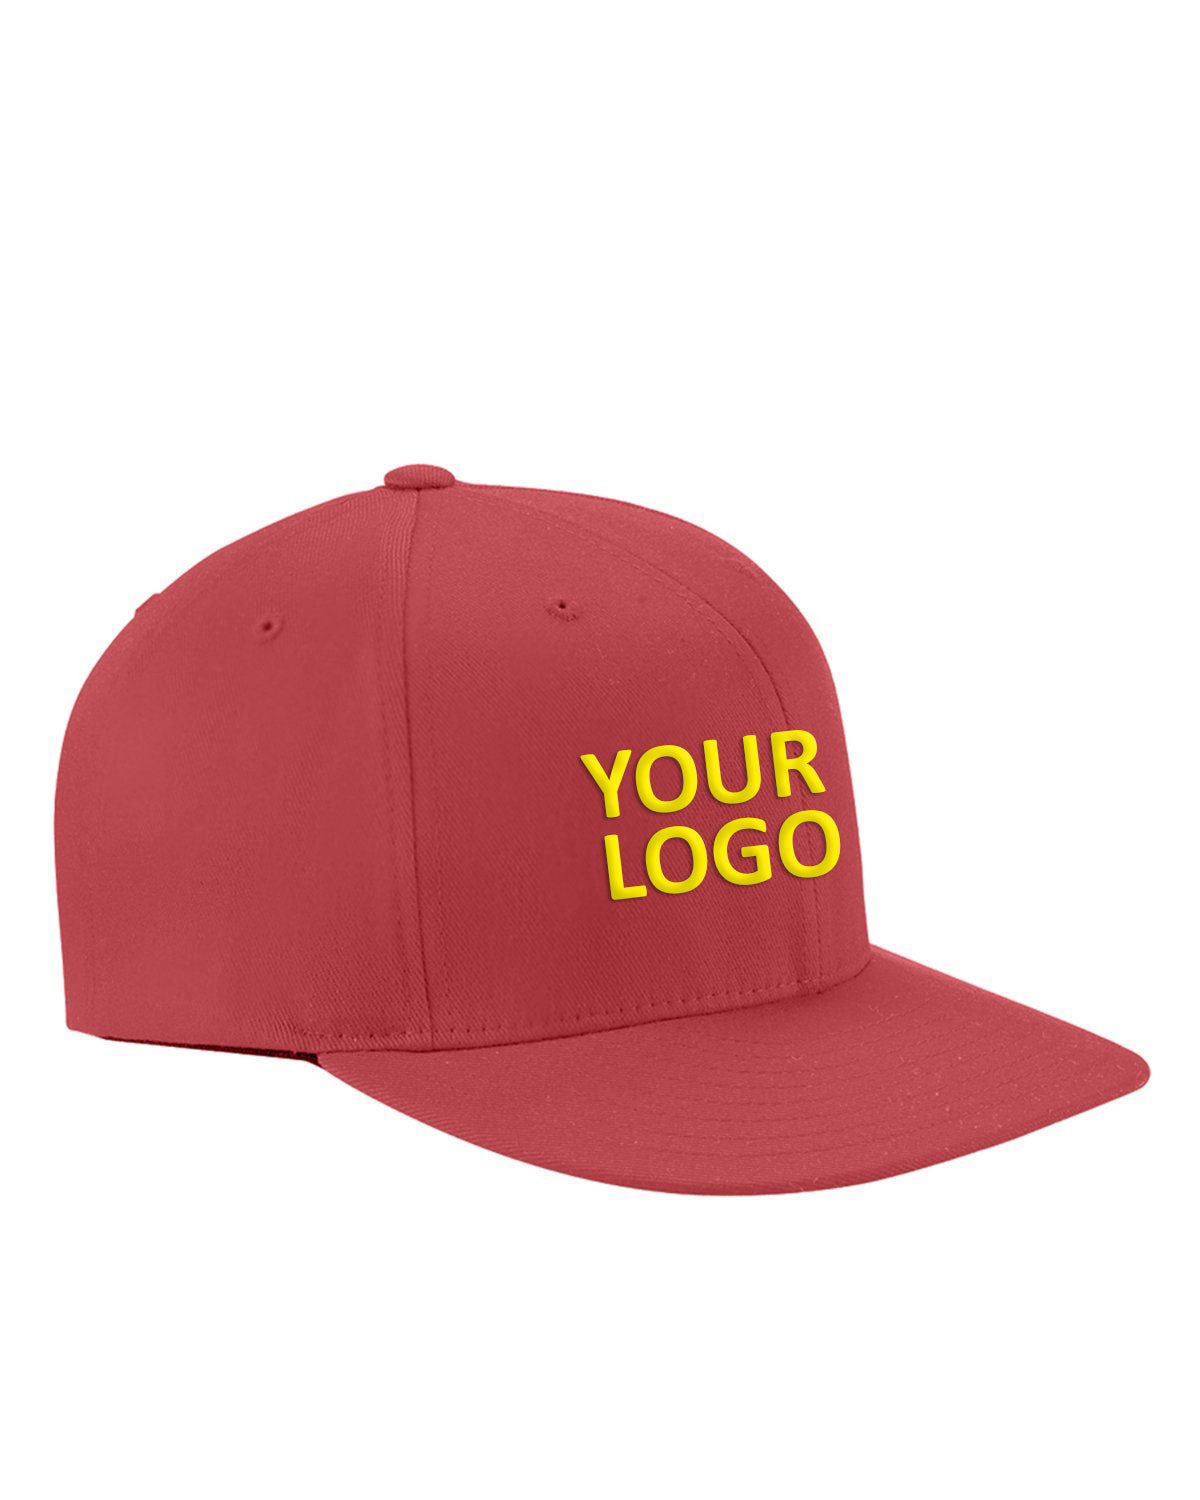 flexfit_6297f_red_company_logo_headwear